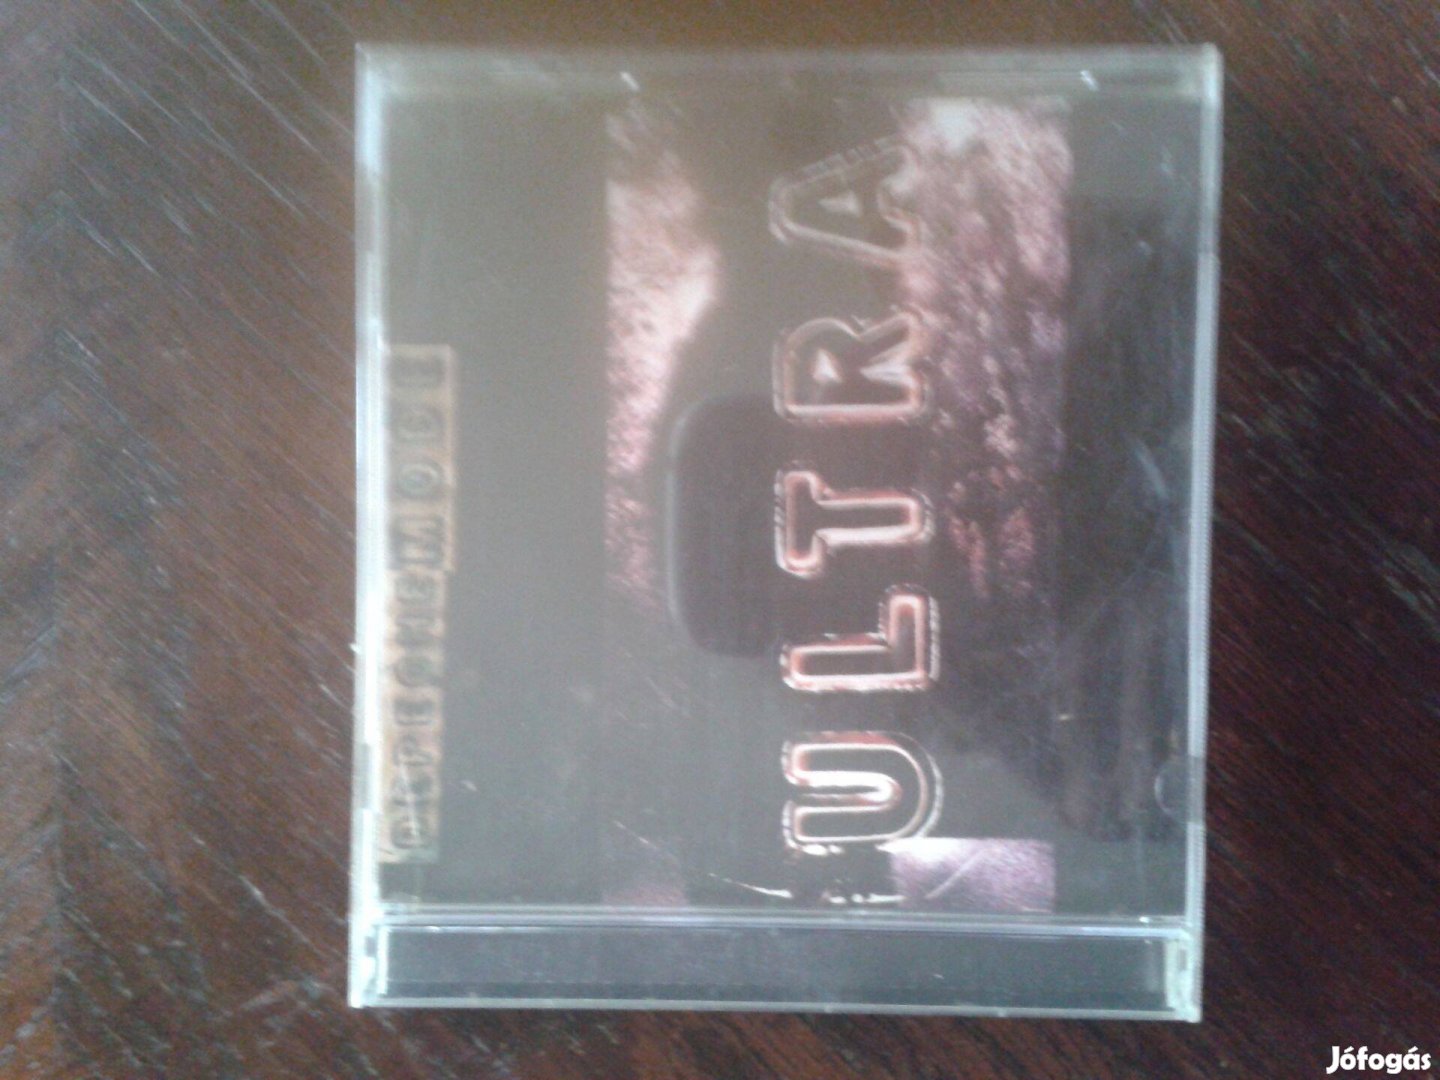 Depeche Mode - Ultra CD